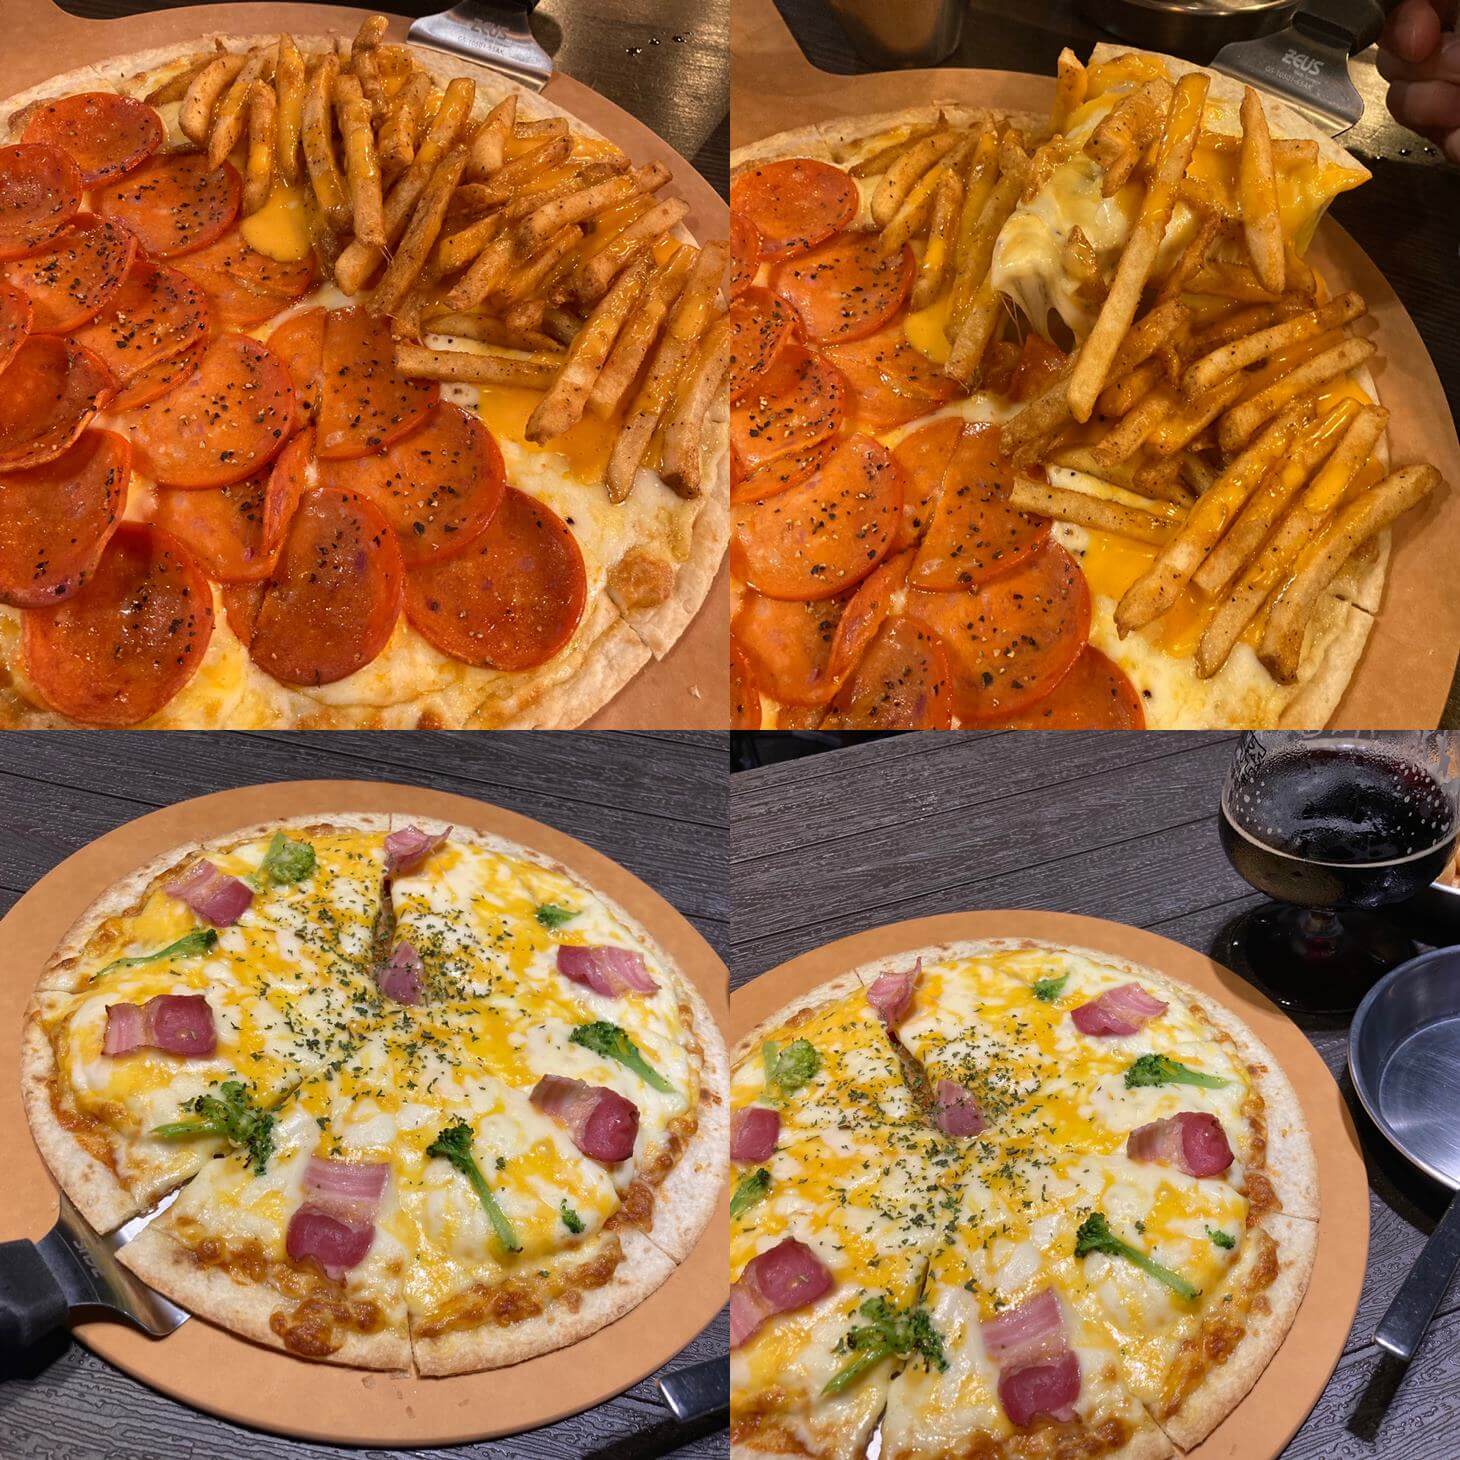 탄광맥주-피자-베이컨에그피자-페페로니감자튀김피자-맛집